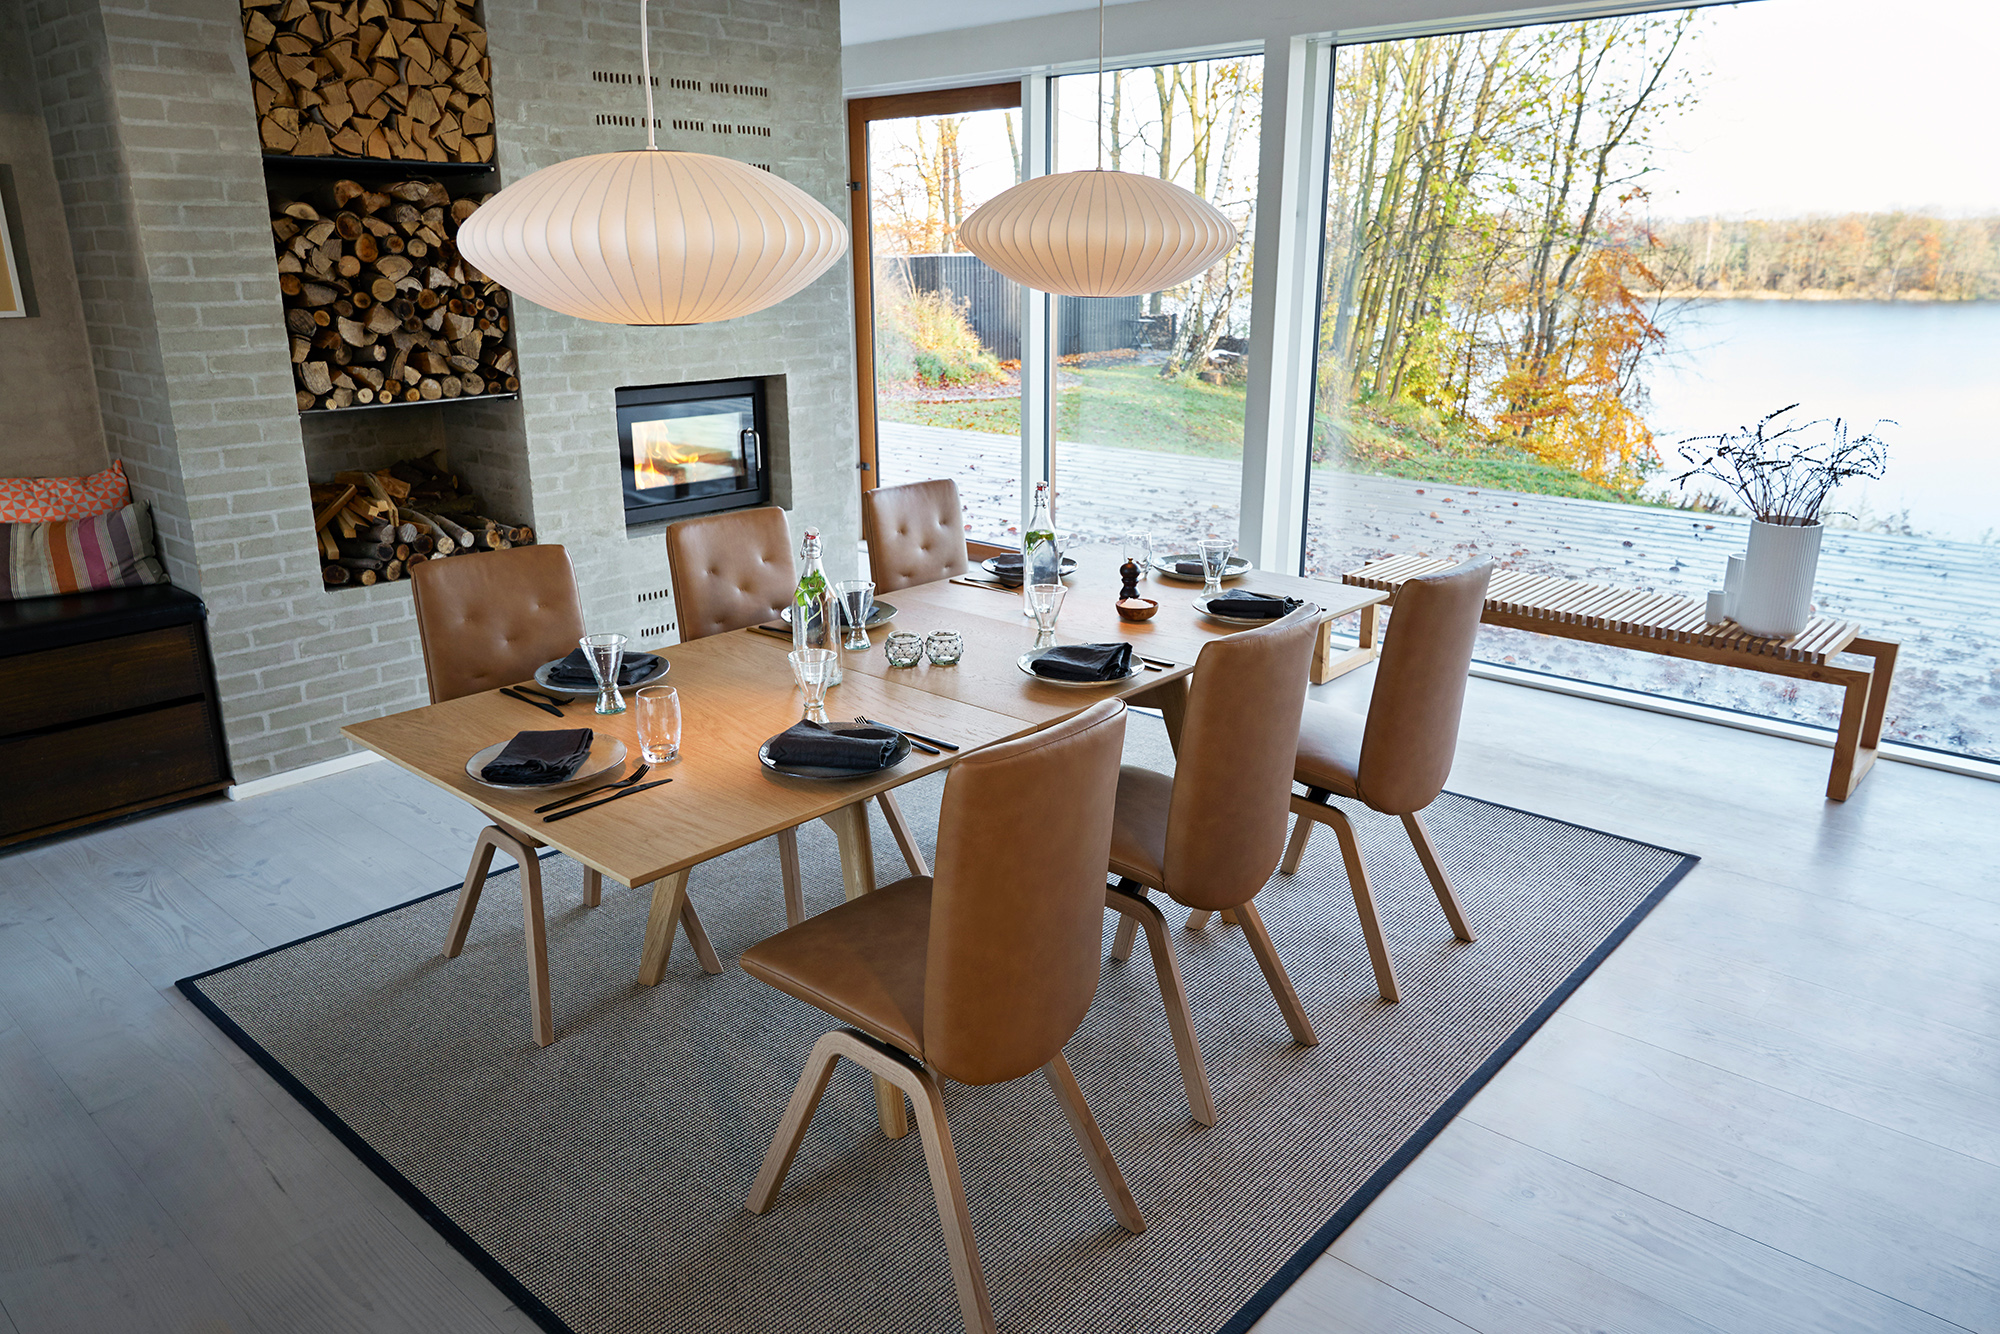 Wenn ihr im Herbst euer Zuhause mit Stressless Esszimmermöbeln besonders genießen wollt, bringen herbstliche Wohnideen die Natur und Gemütlichkeit ins Haus.